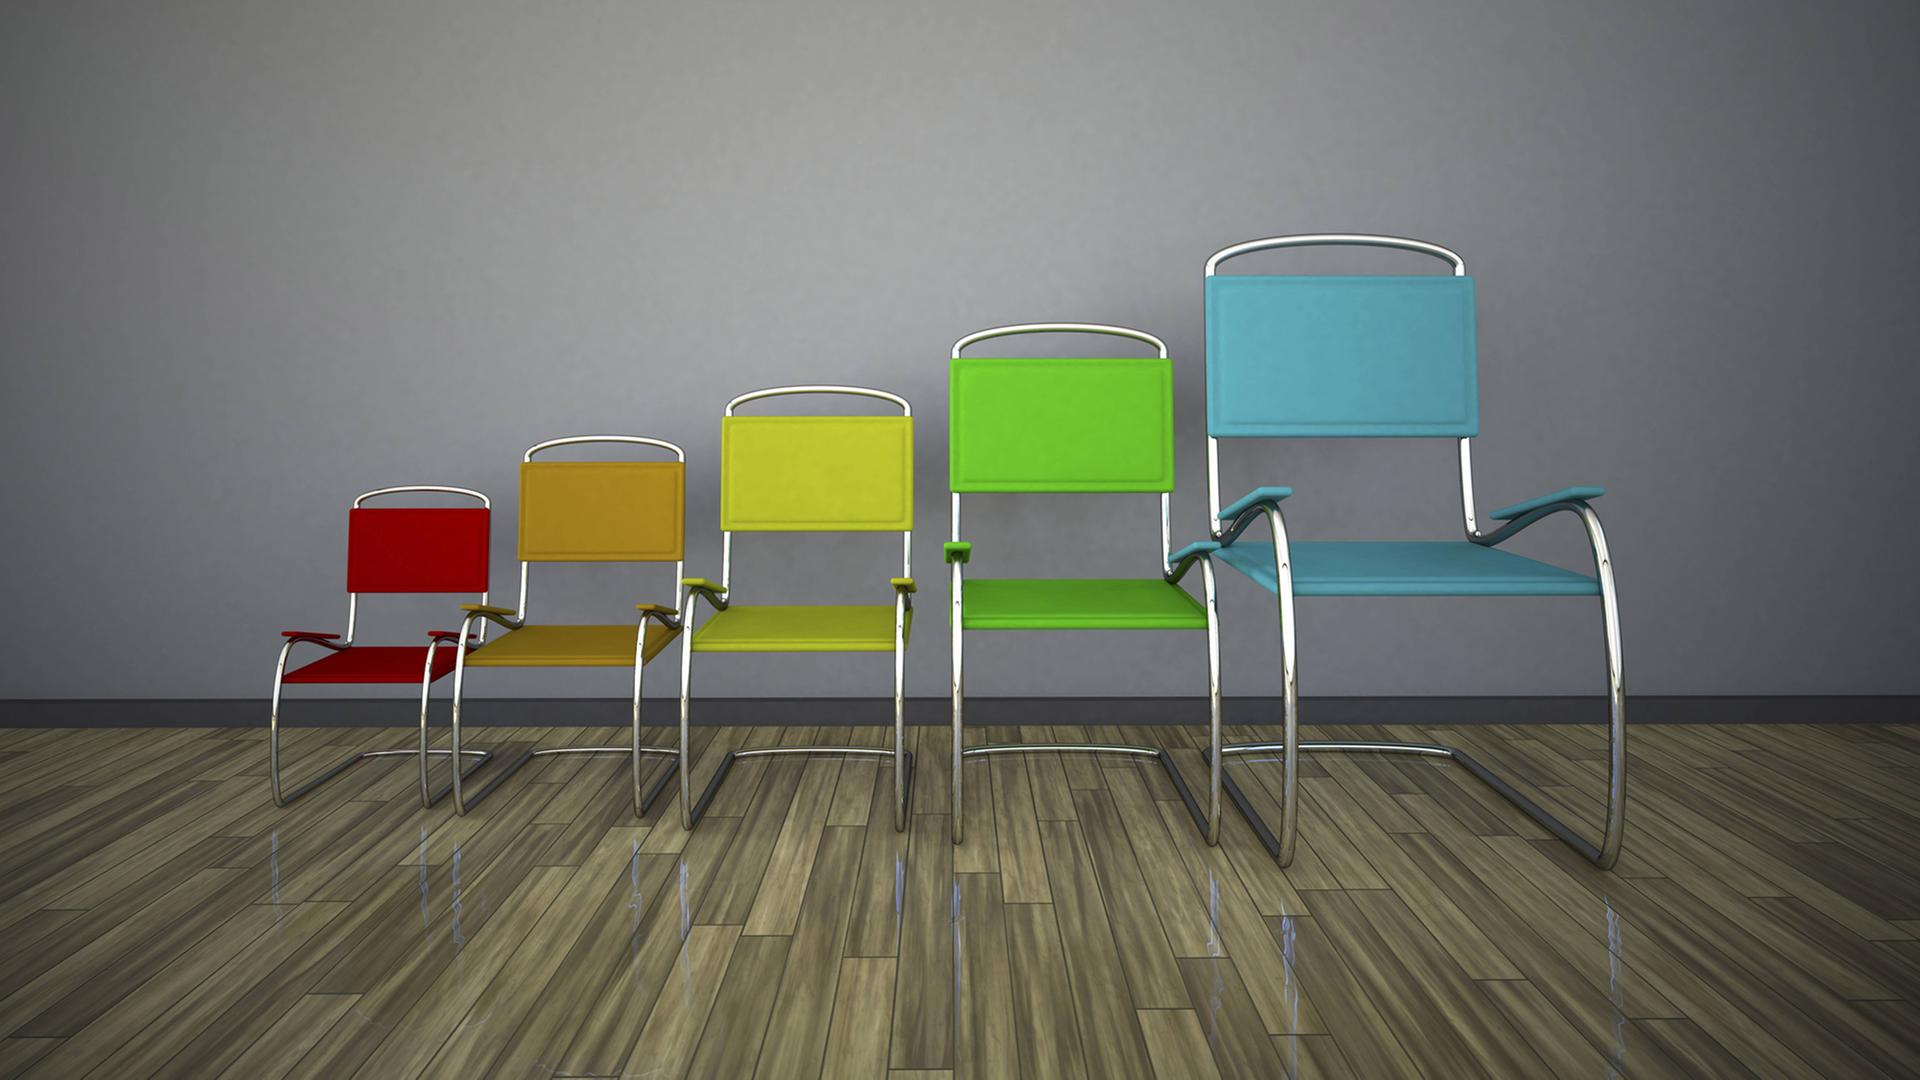 Fünf Stühle in verschiedenen Farben und Größen stehen nebeneinander. Von links nach rechts werden die Stühle immer größer.